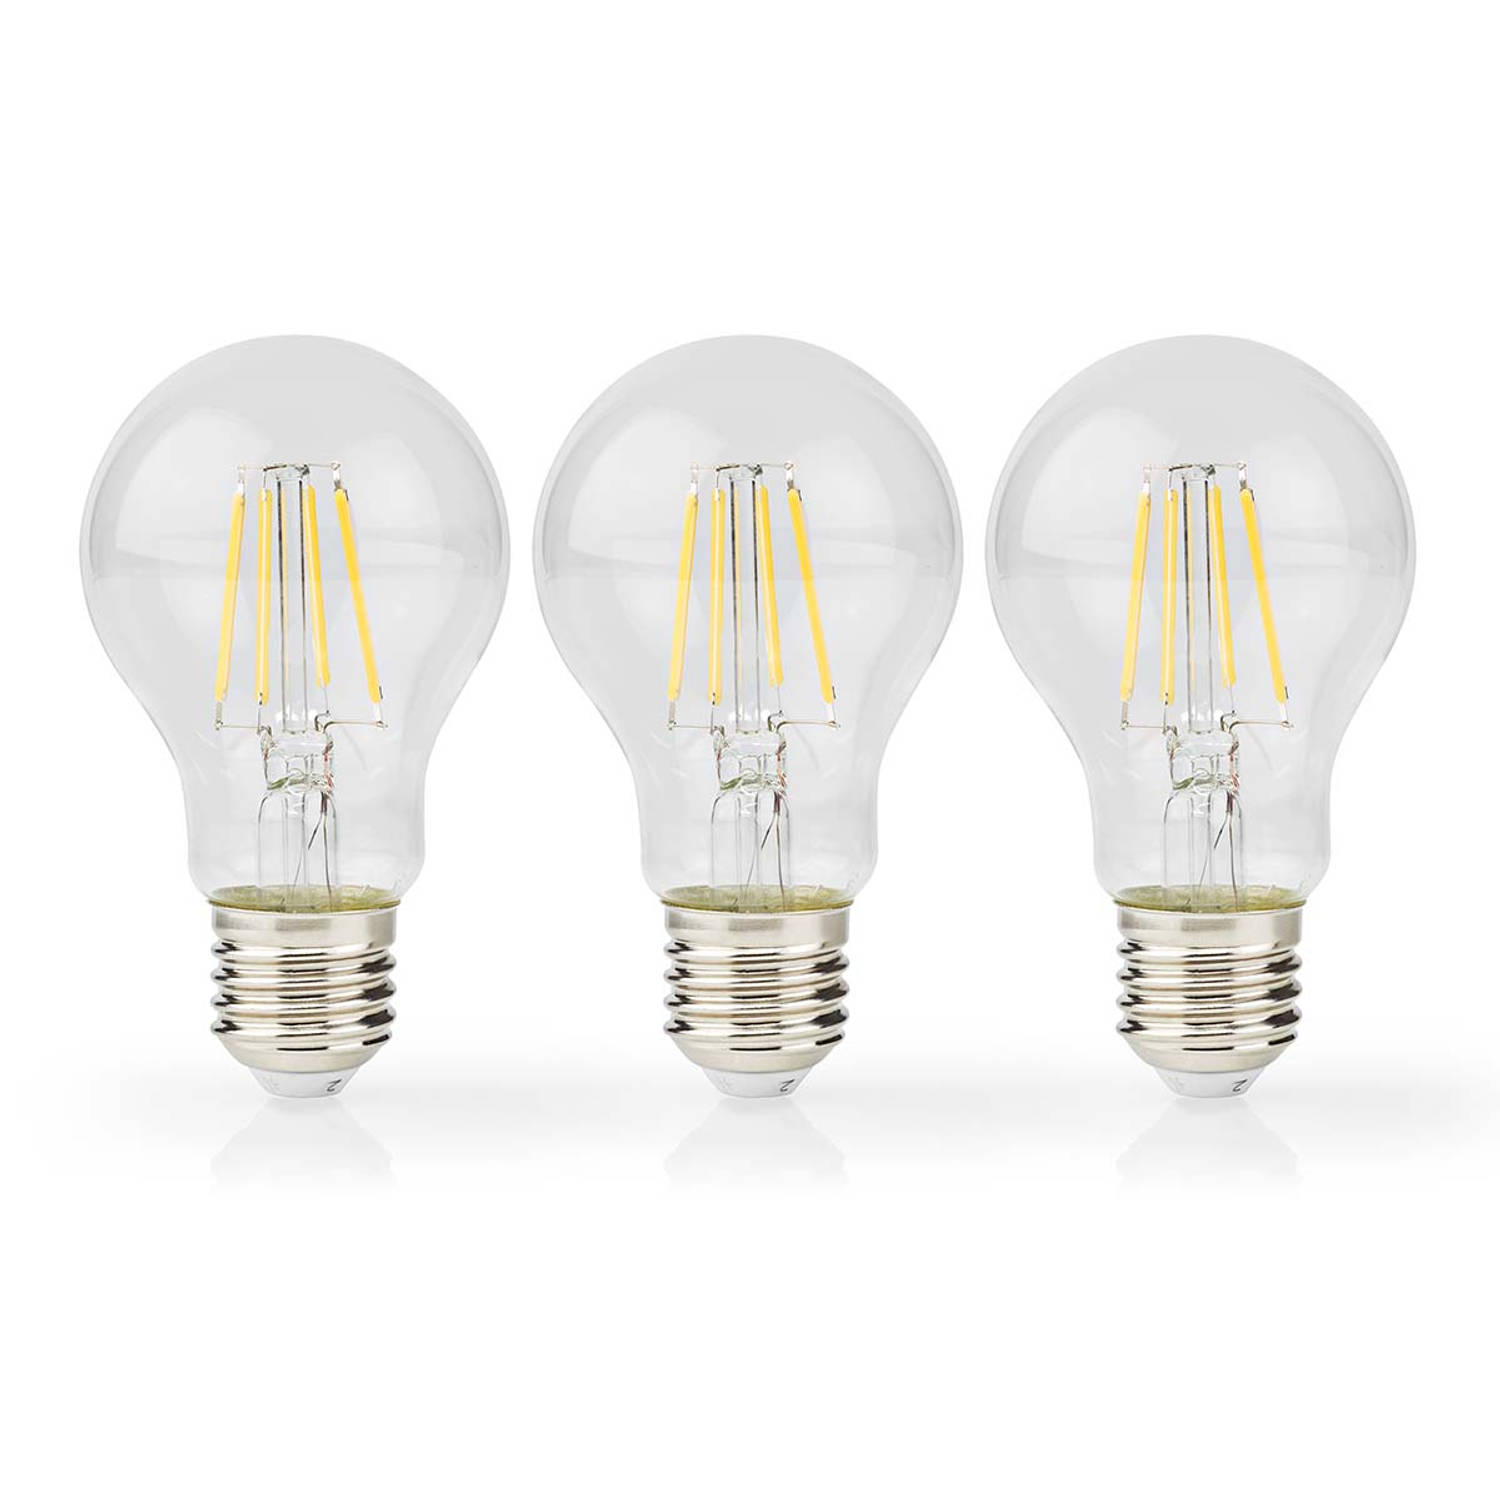 LED-Filamentlamp E27 | A60 | 4 W | 470 lm | 2700 K | 3 stuks | 1 stuks LBFE27A601P3